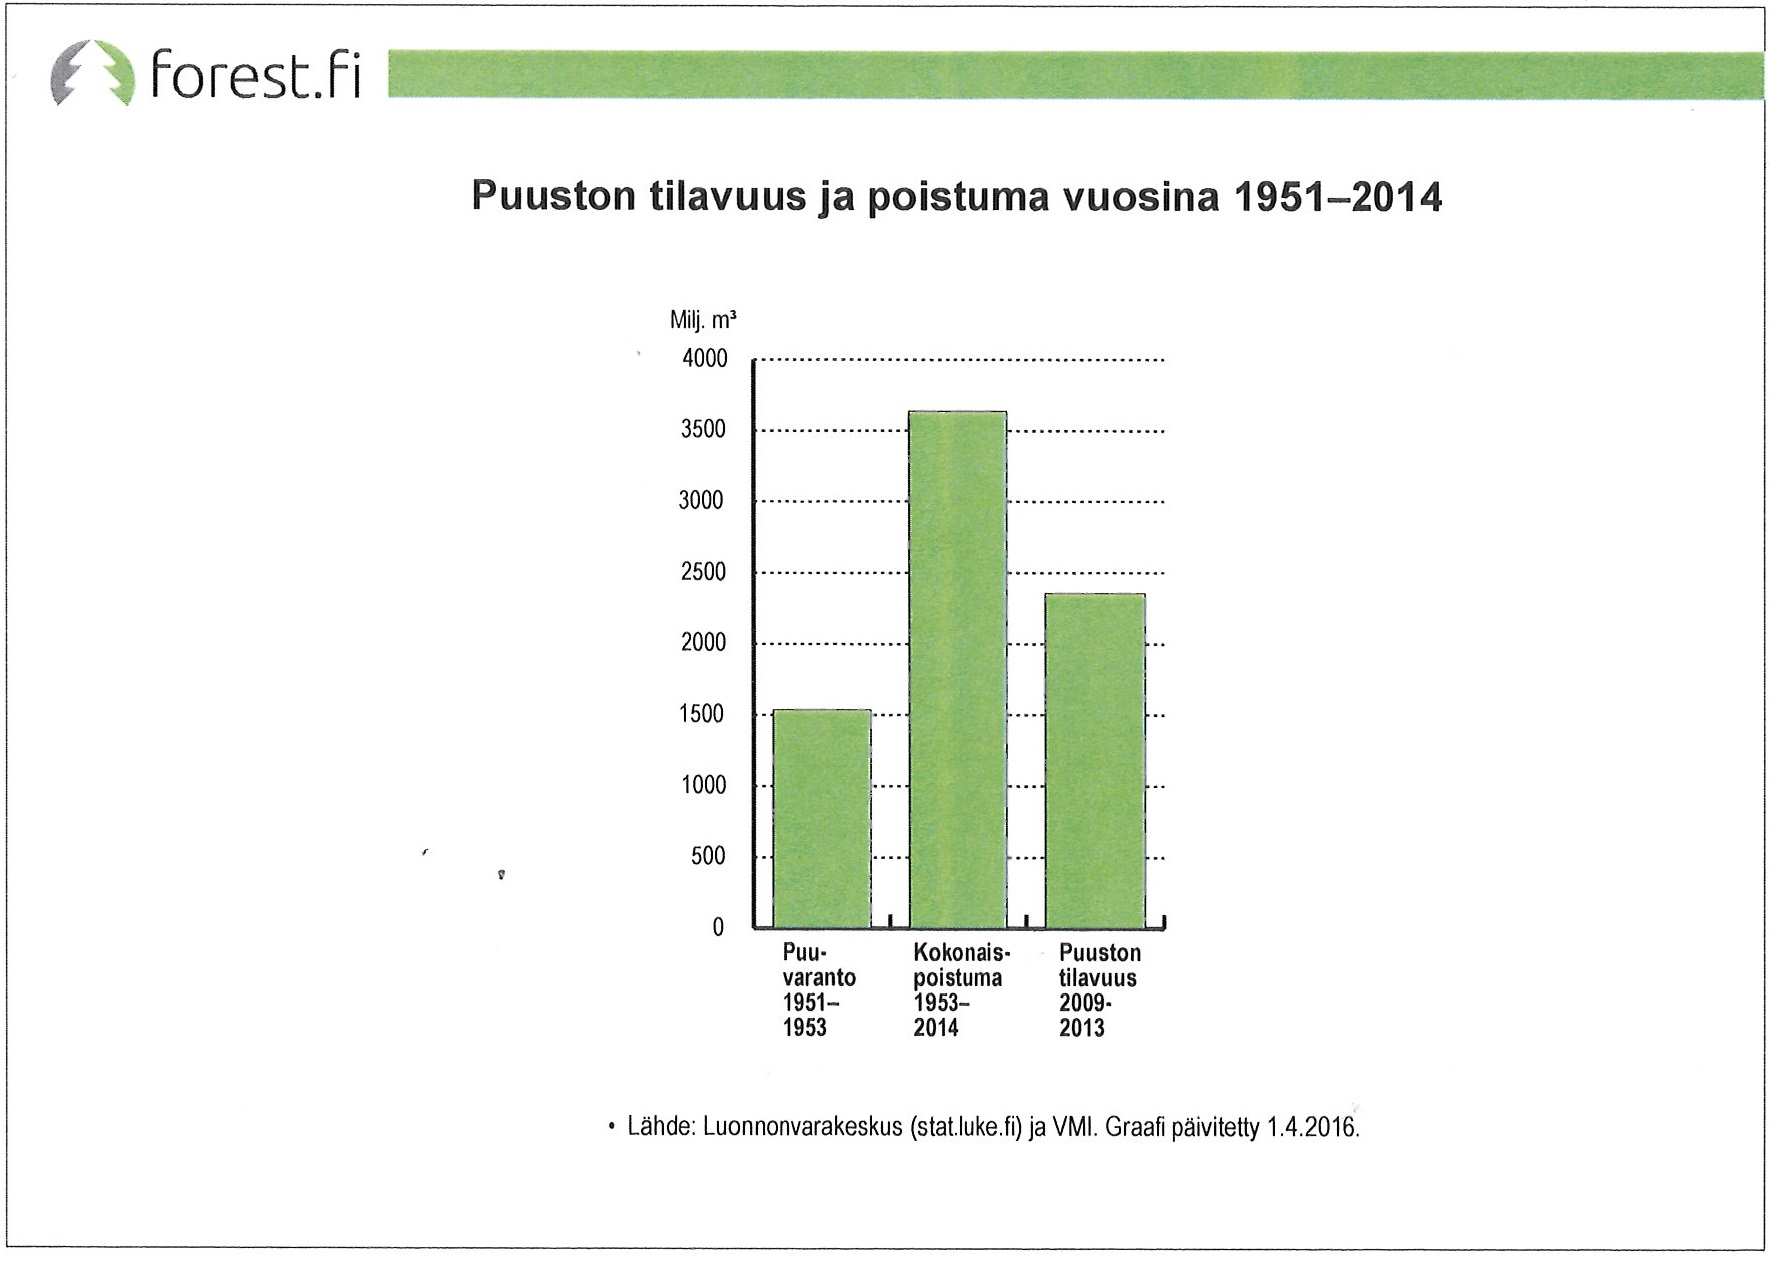 Puuston tilavuus ja poistuma 1951-2014